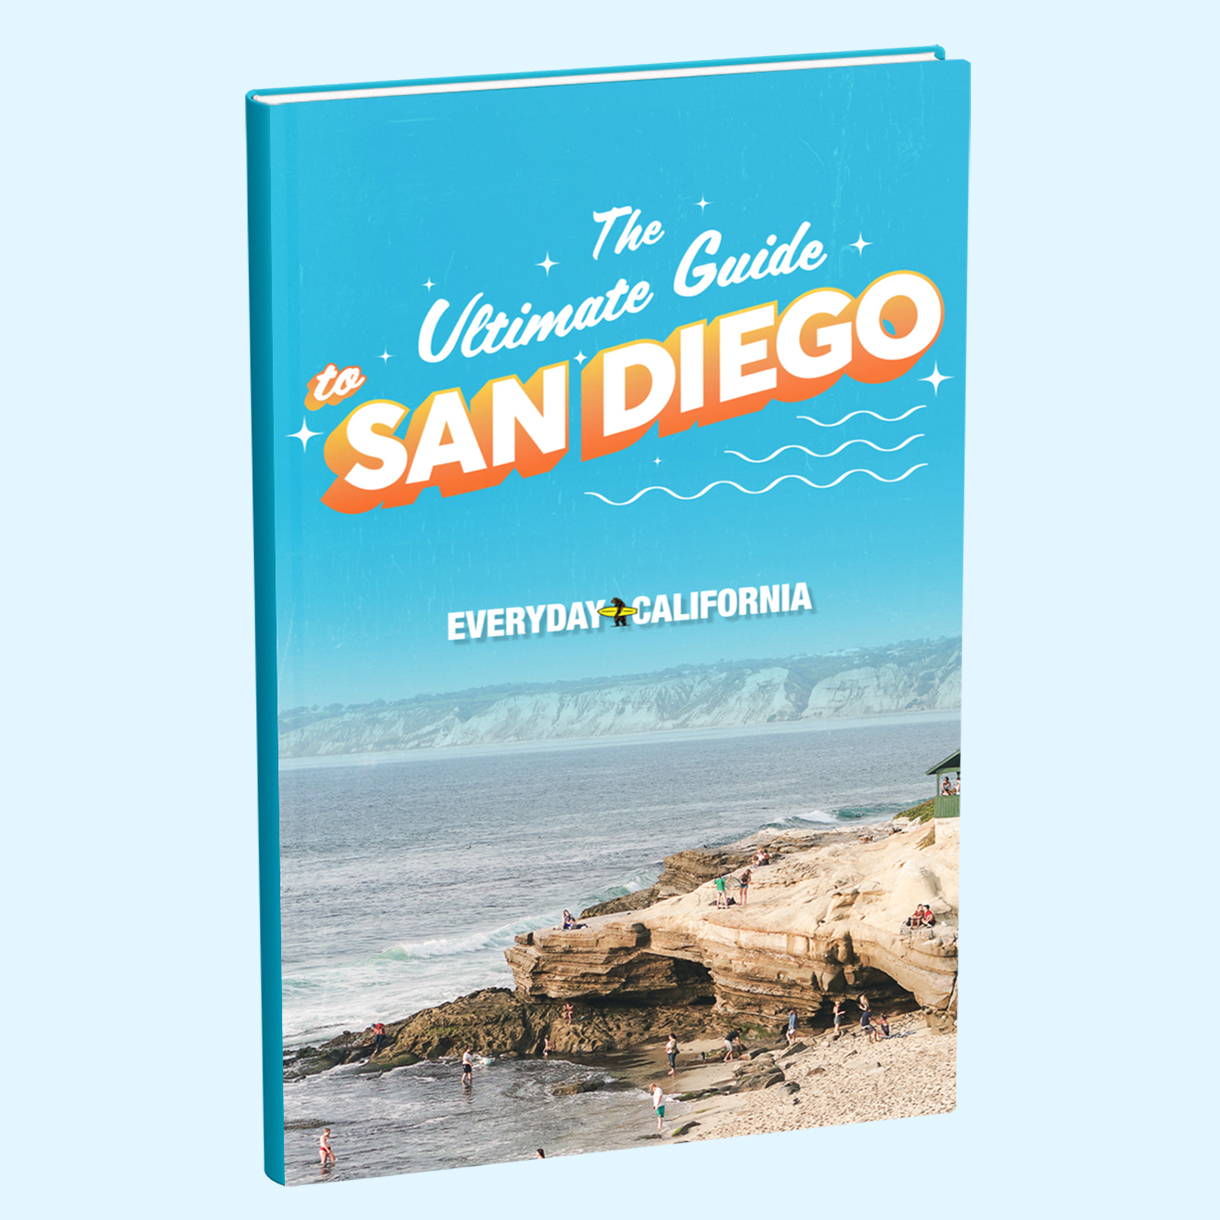 Una imagen de la portada del PDF de la Guía Definitiva de San Diego, que es de color azul brillante y tiene una foto de una playa llena de gente.